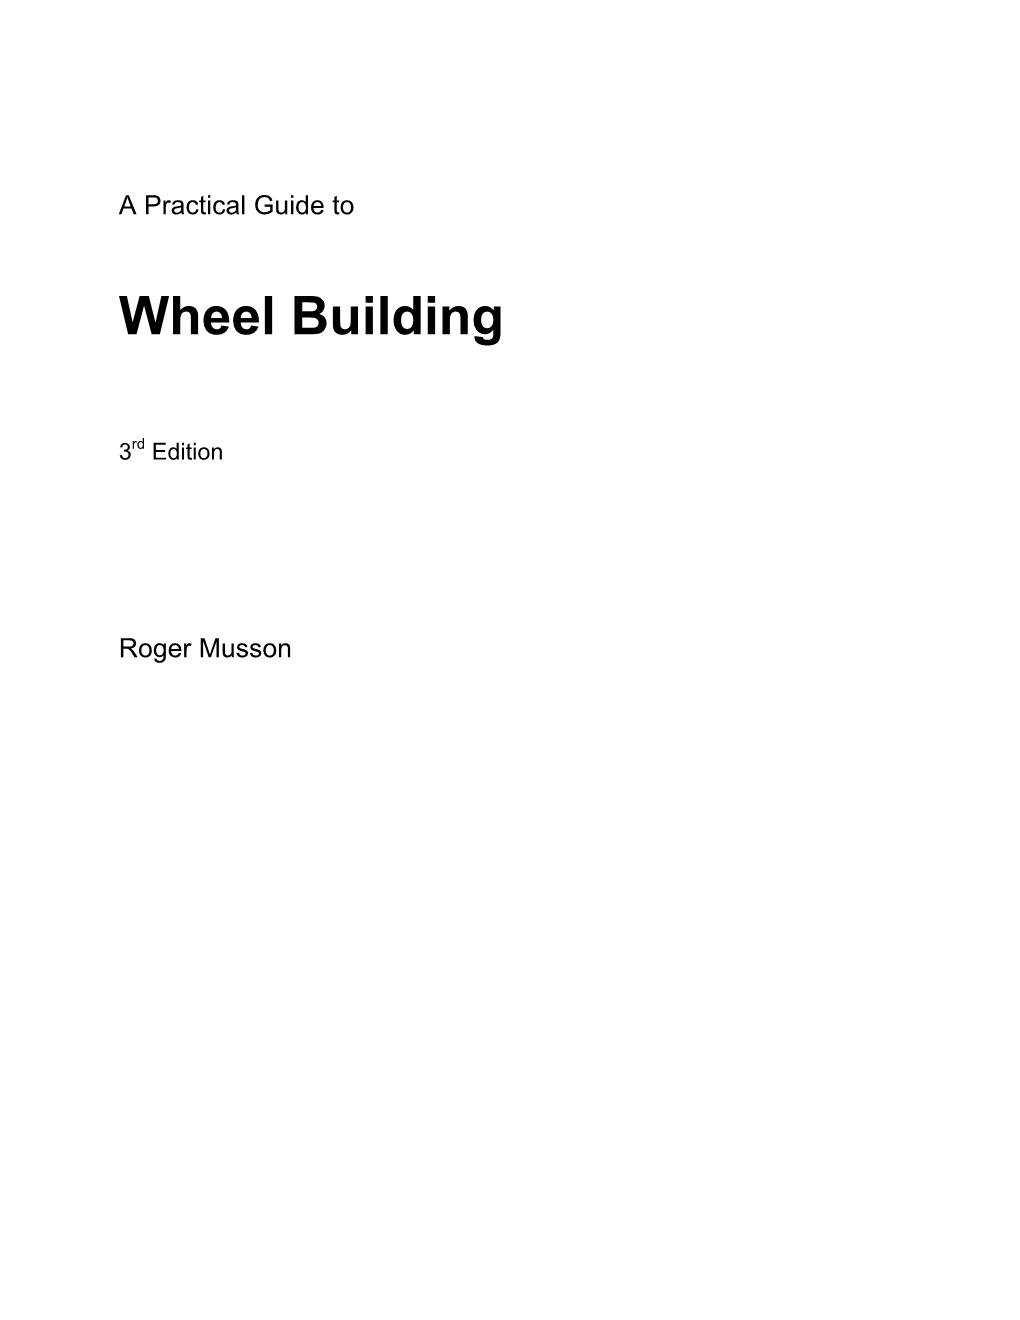 Wheelbuilding Edition 3